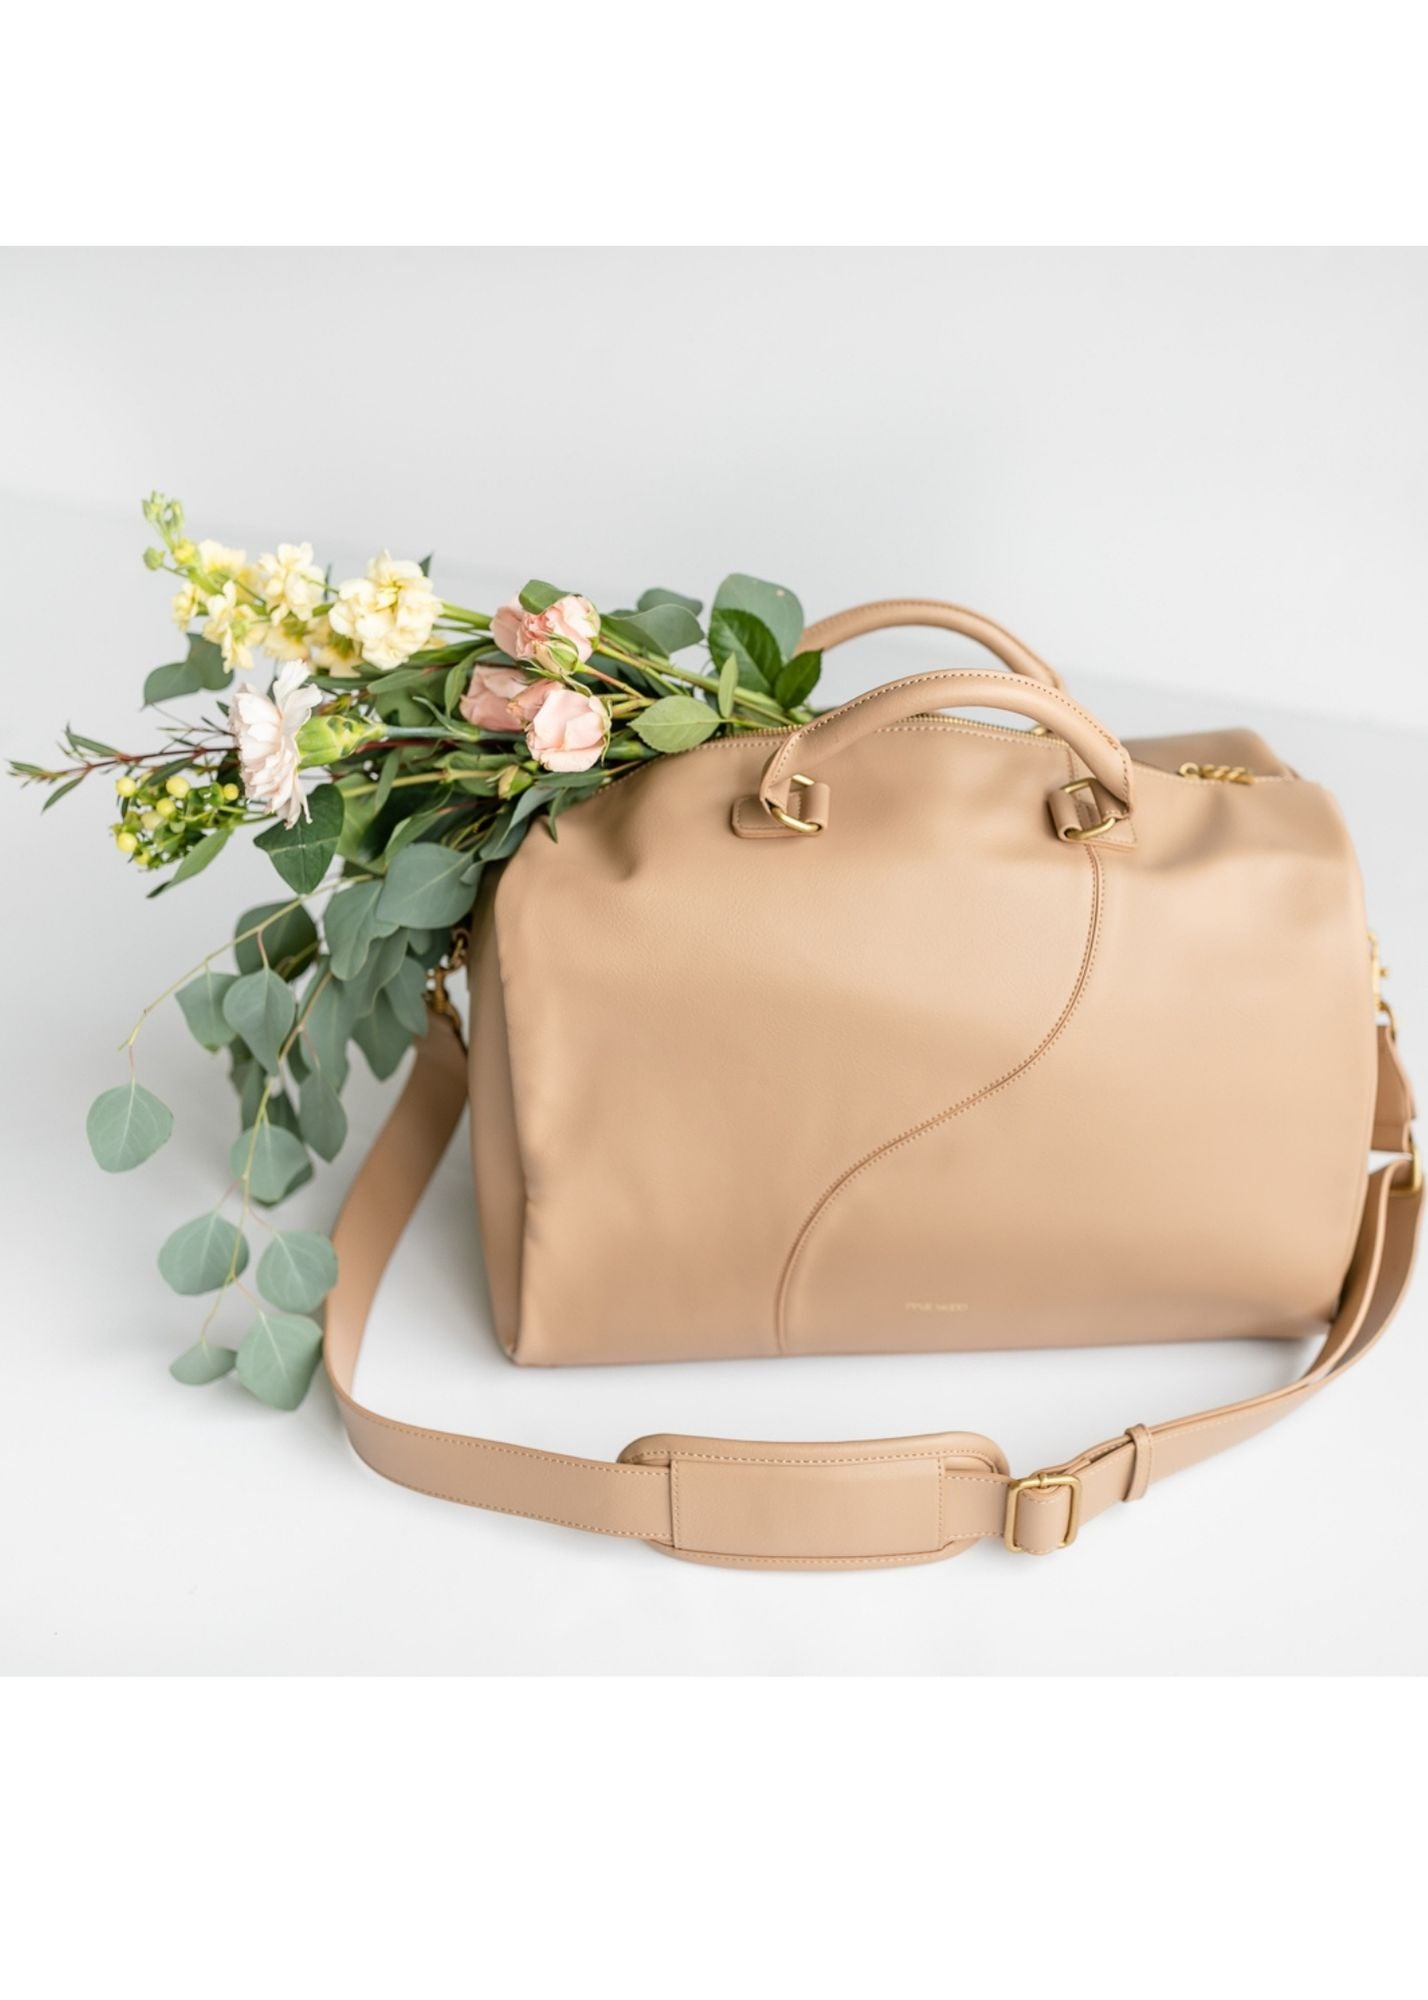 Juliet Weekender Bag Accessories Pixie Mood